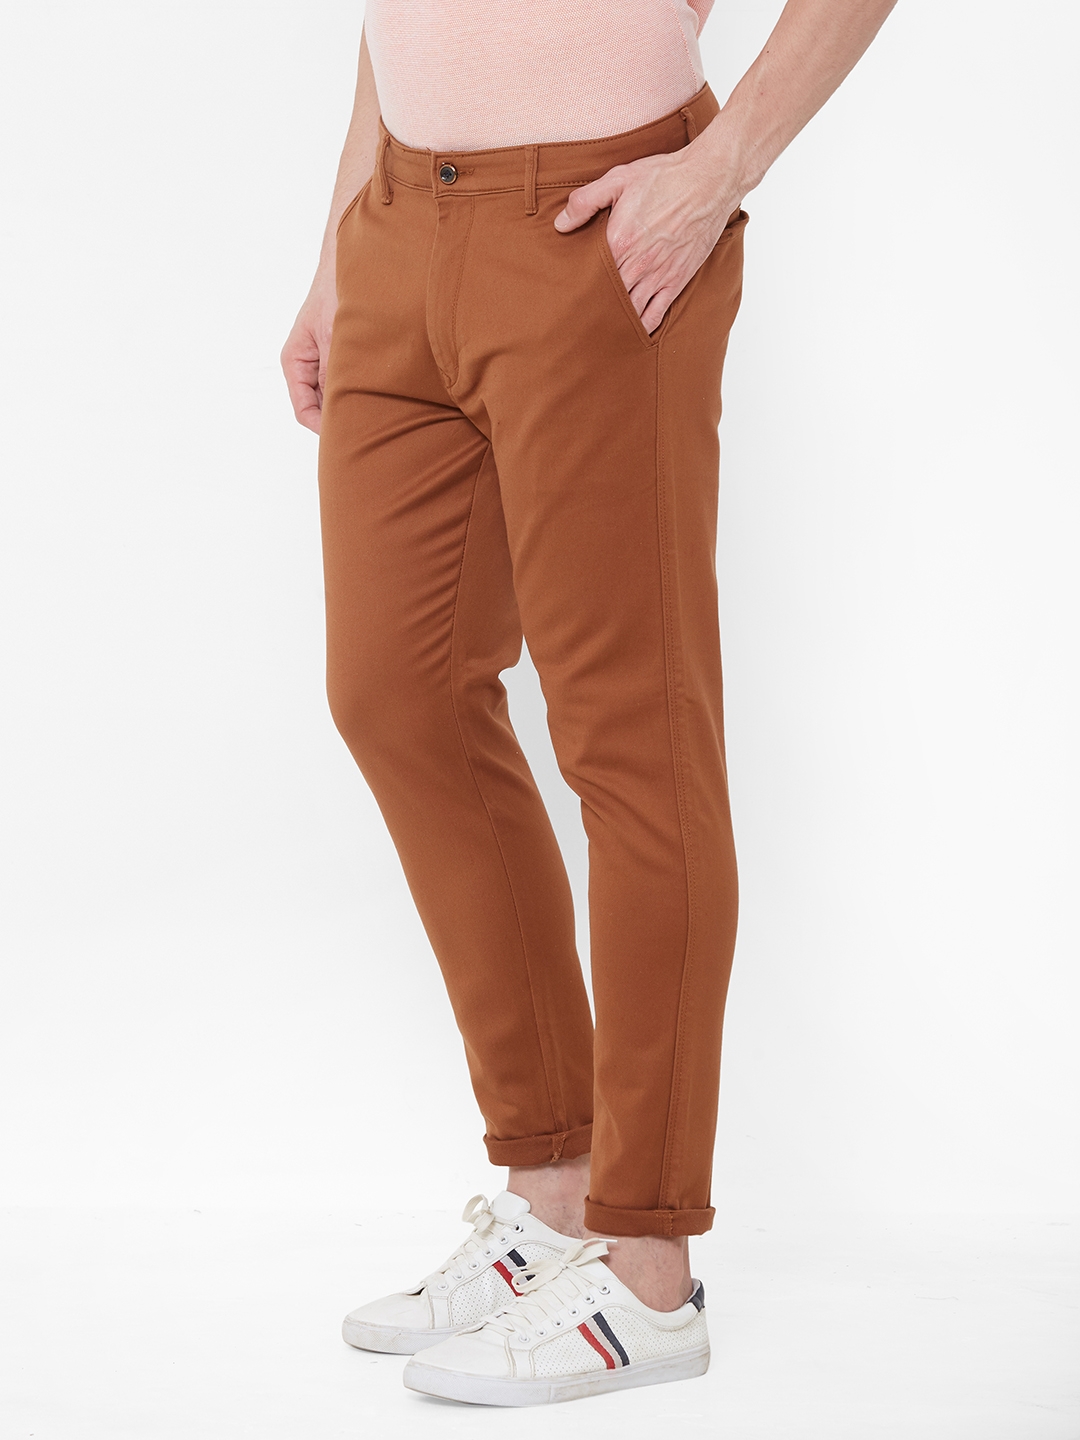 Livewire | Livewire Men's Cotton Lycra Rust Slim Fit Solid Trouser 2